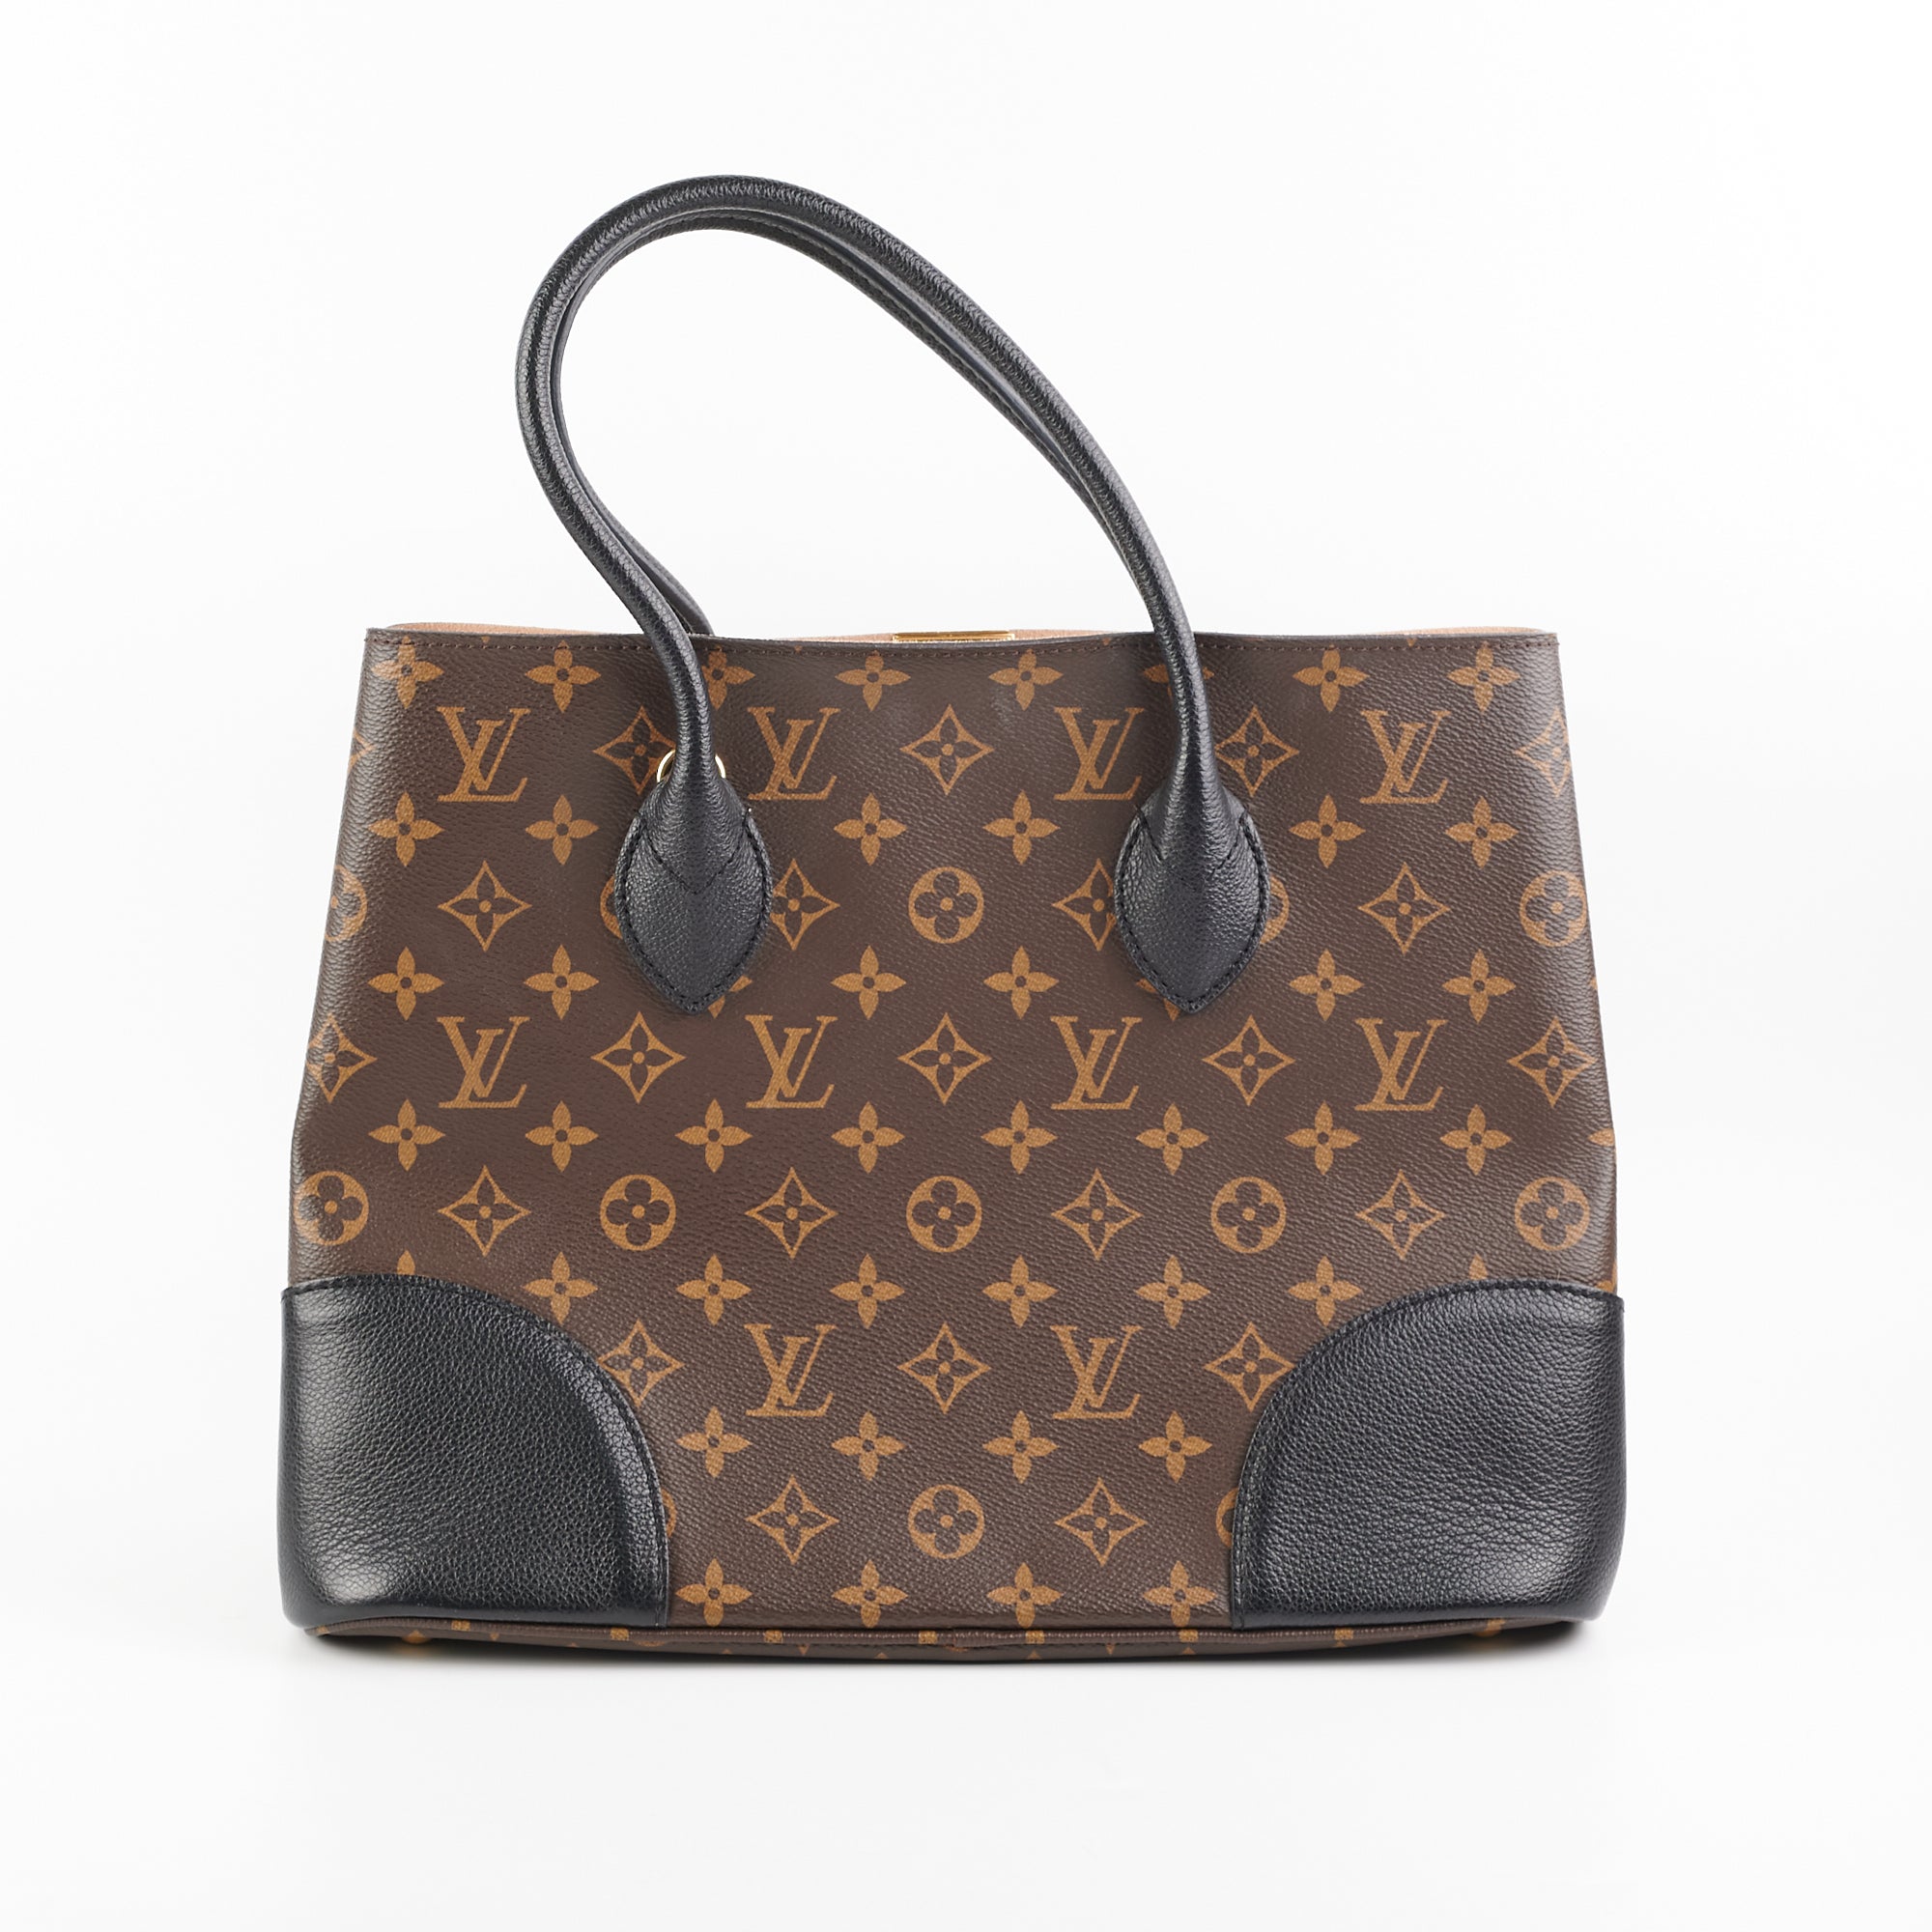 Louis Vuitton Flandrin Bag Monogram - THE PURSE AFFAIR